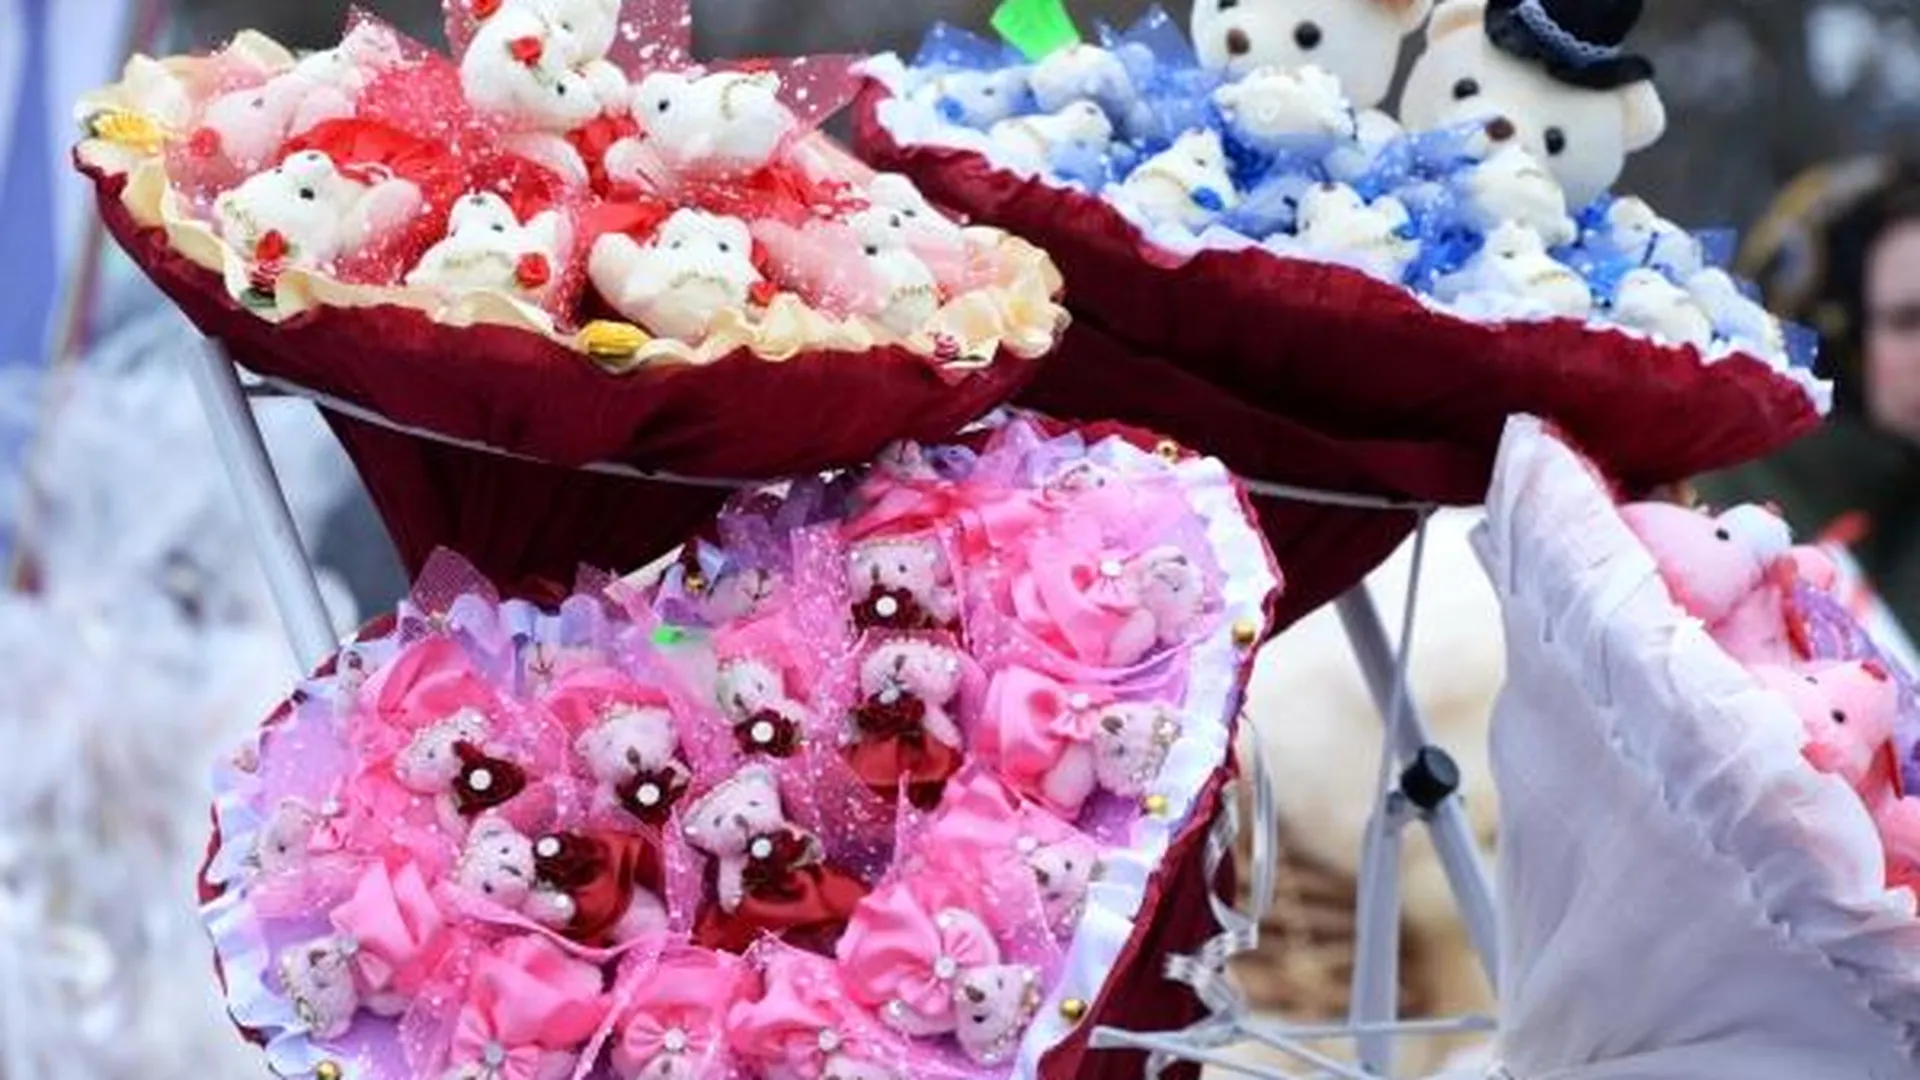 Цветы, духи и конфеты дарили на День влюбленных в Подмосковье